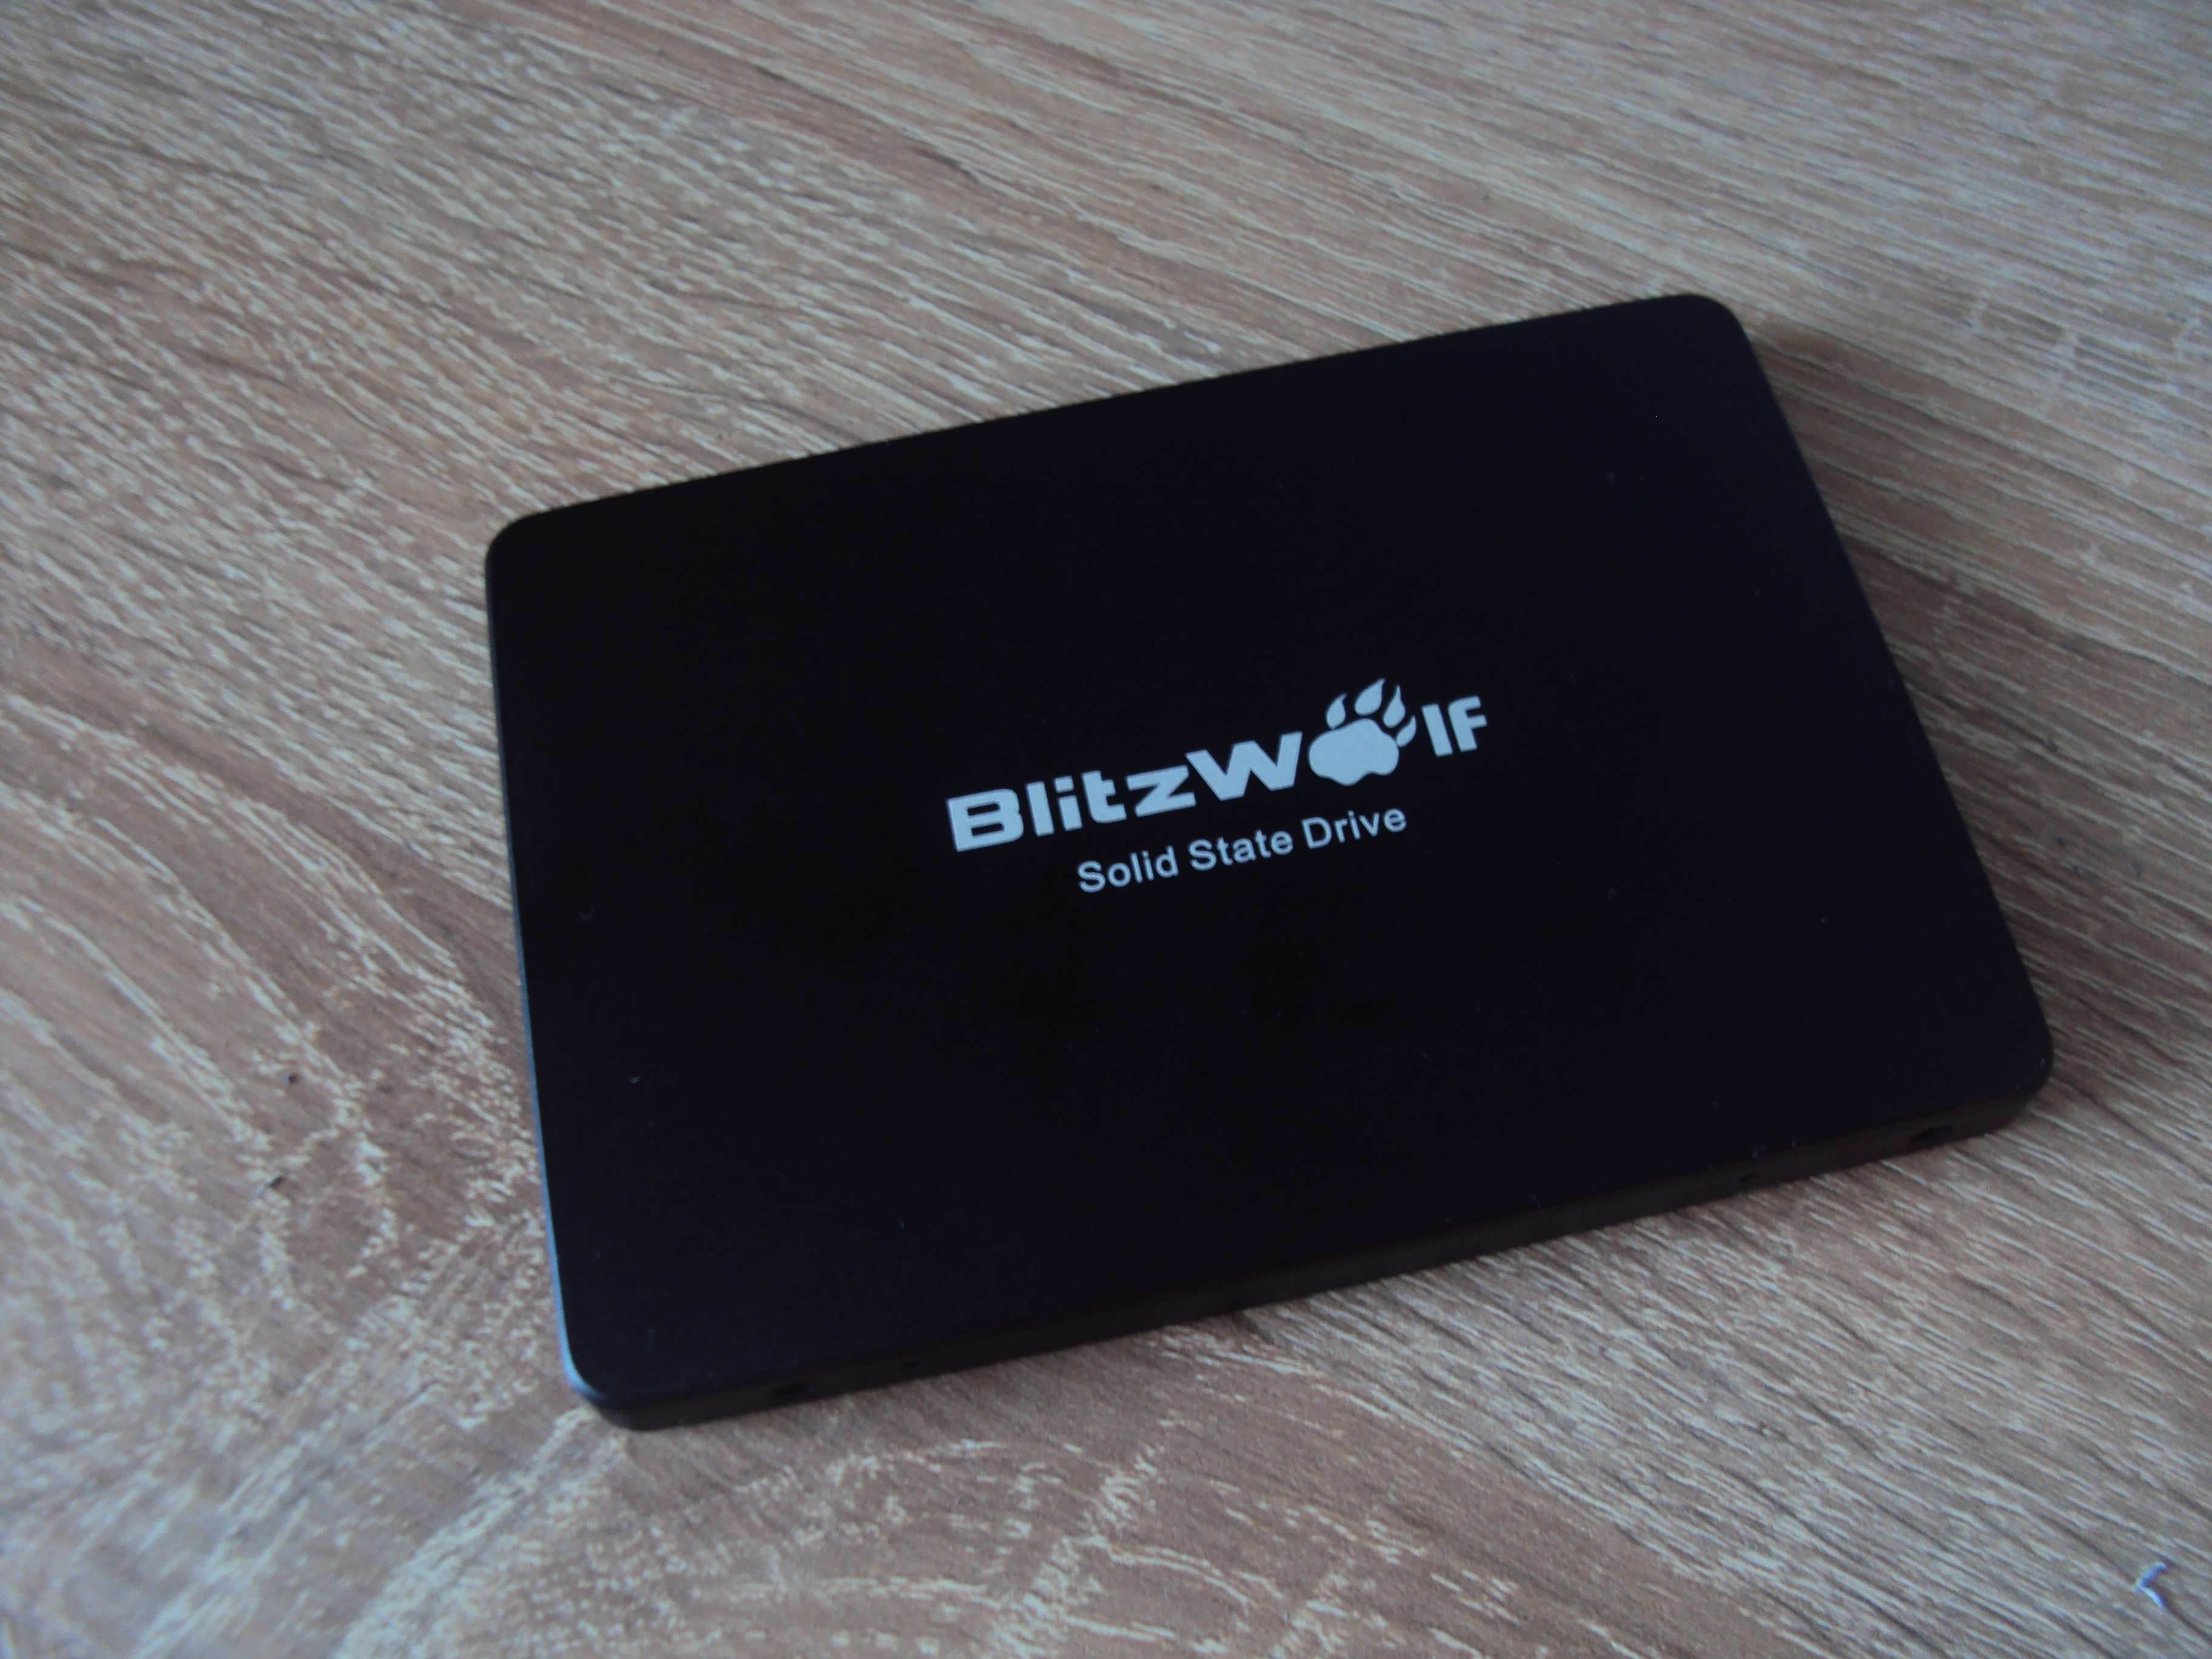 Dysk SSD BlitzWolf BW-D1 120GB - test i recenzja recenzje, polecane zalety, wady, test, Specyfikacja, Recenzja, polska recenzja, Dysk SSD BlitzWolf BW, cena  Mam już za sobą testy pierwszego dysku SSD, ale muszę przyznać się do błędu. Po włożeniu go do konsoli, zamiast standardowego zrobiłem największy bląd podczas jakiegokolwiek testu. Wszystkie gry, które były na dysku ADATA zostały zainstalowane z płyt i tak też je uruchamiałem? DSC02700